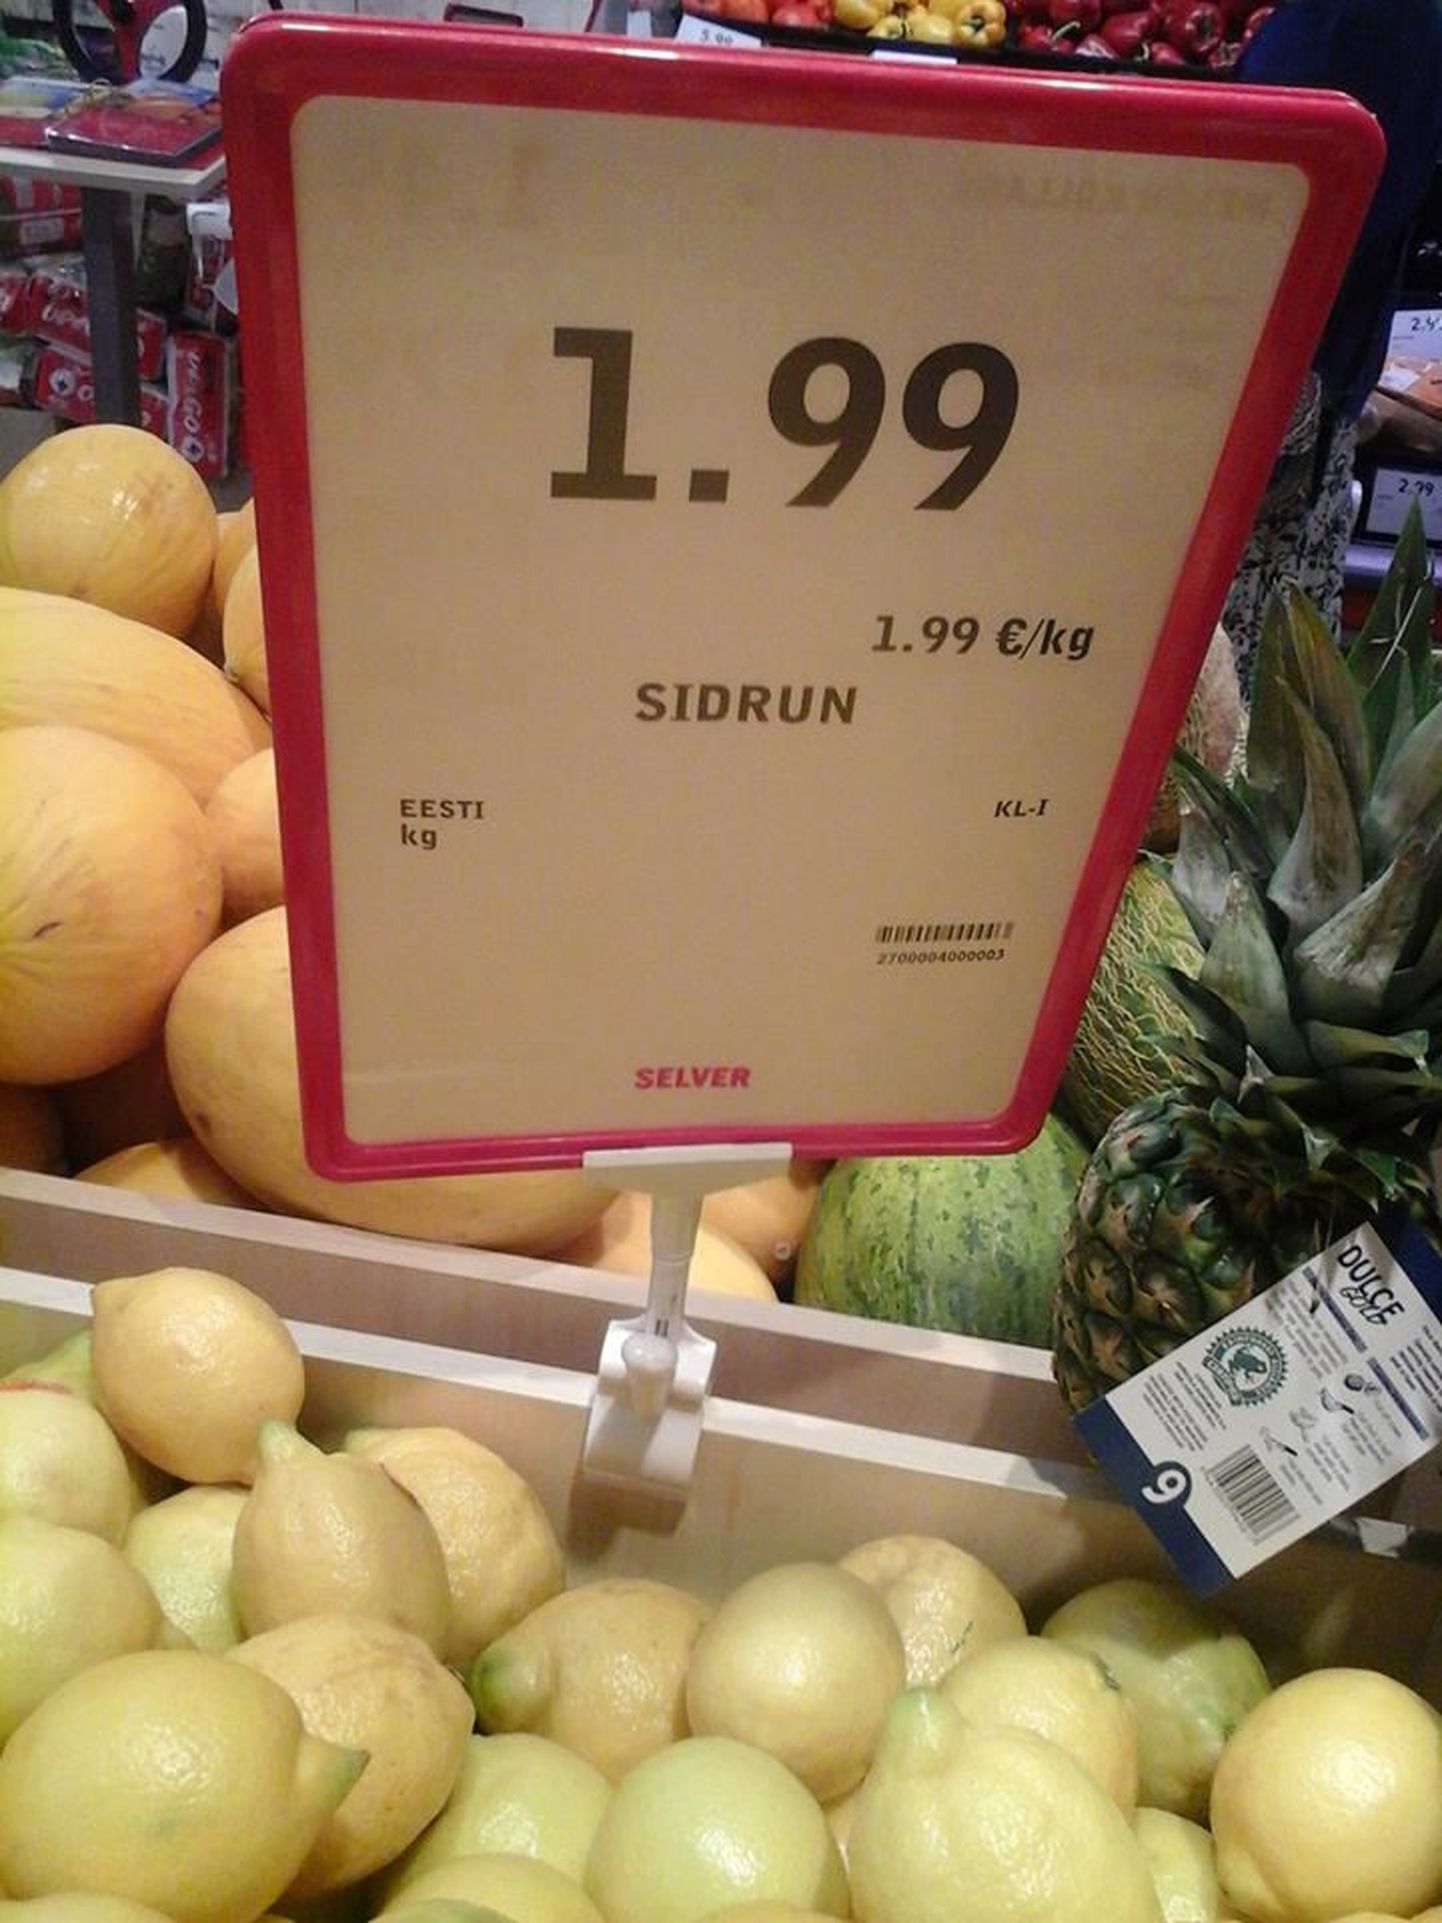 Tartus Veeriku Selveris võis reedel kella 14.30 paiku osta endale sidruneid, mis on väidetavalt Eesti päritolu.